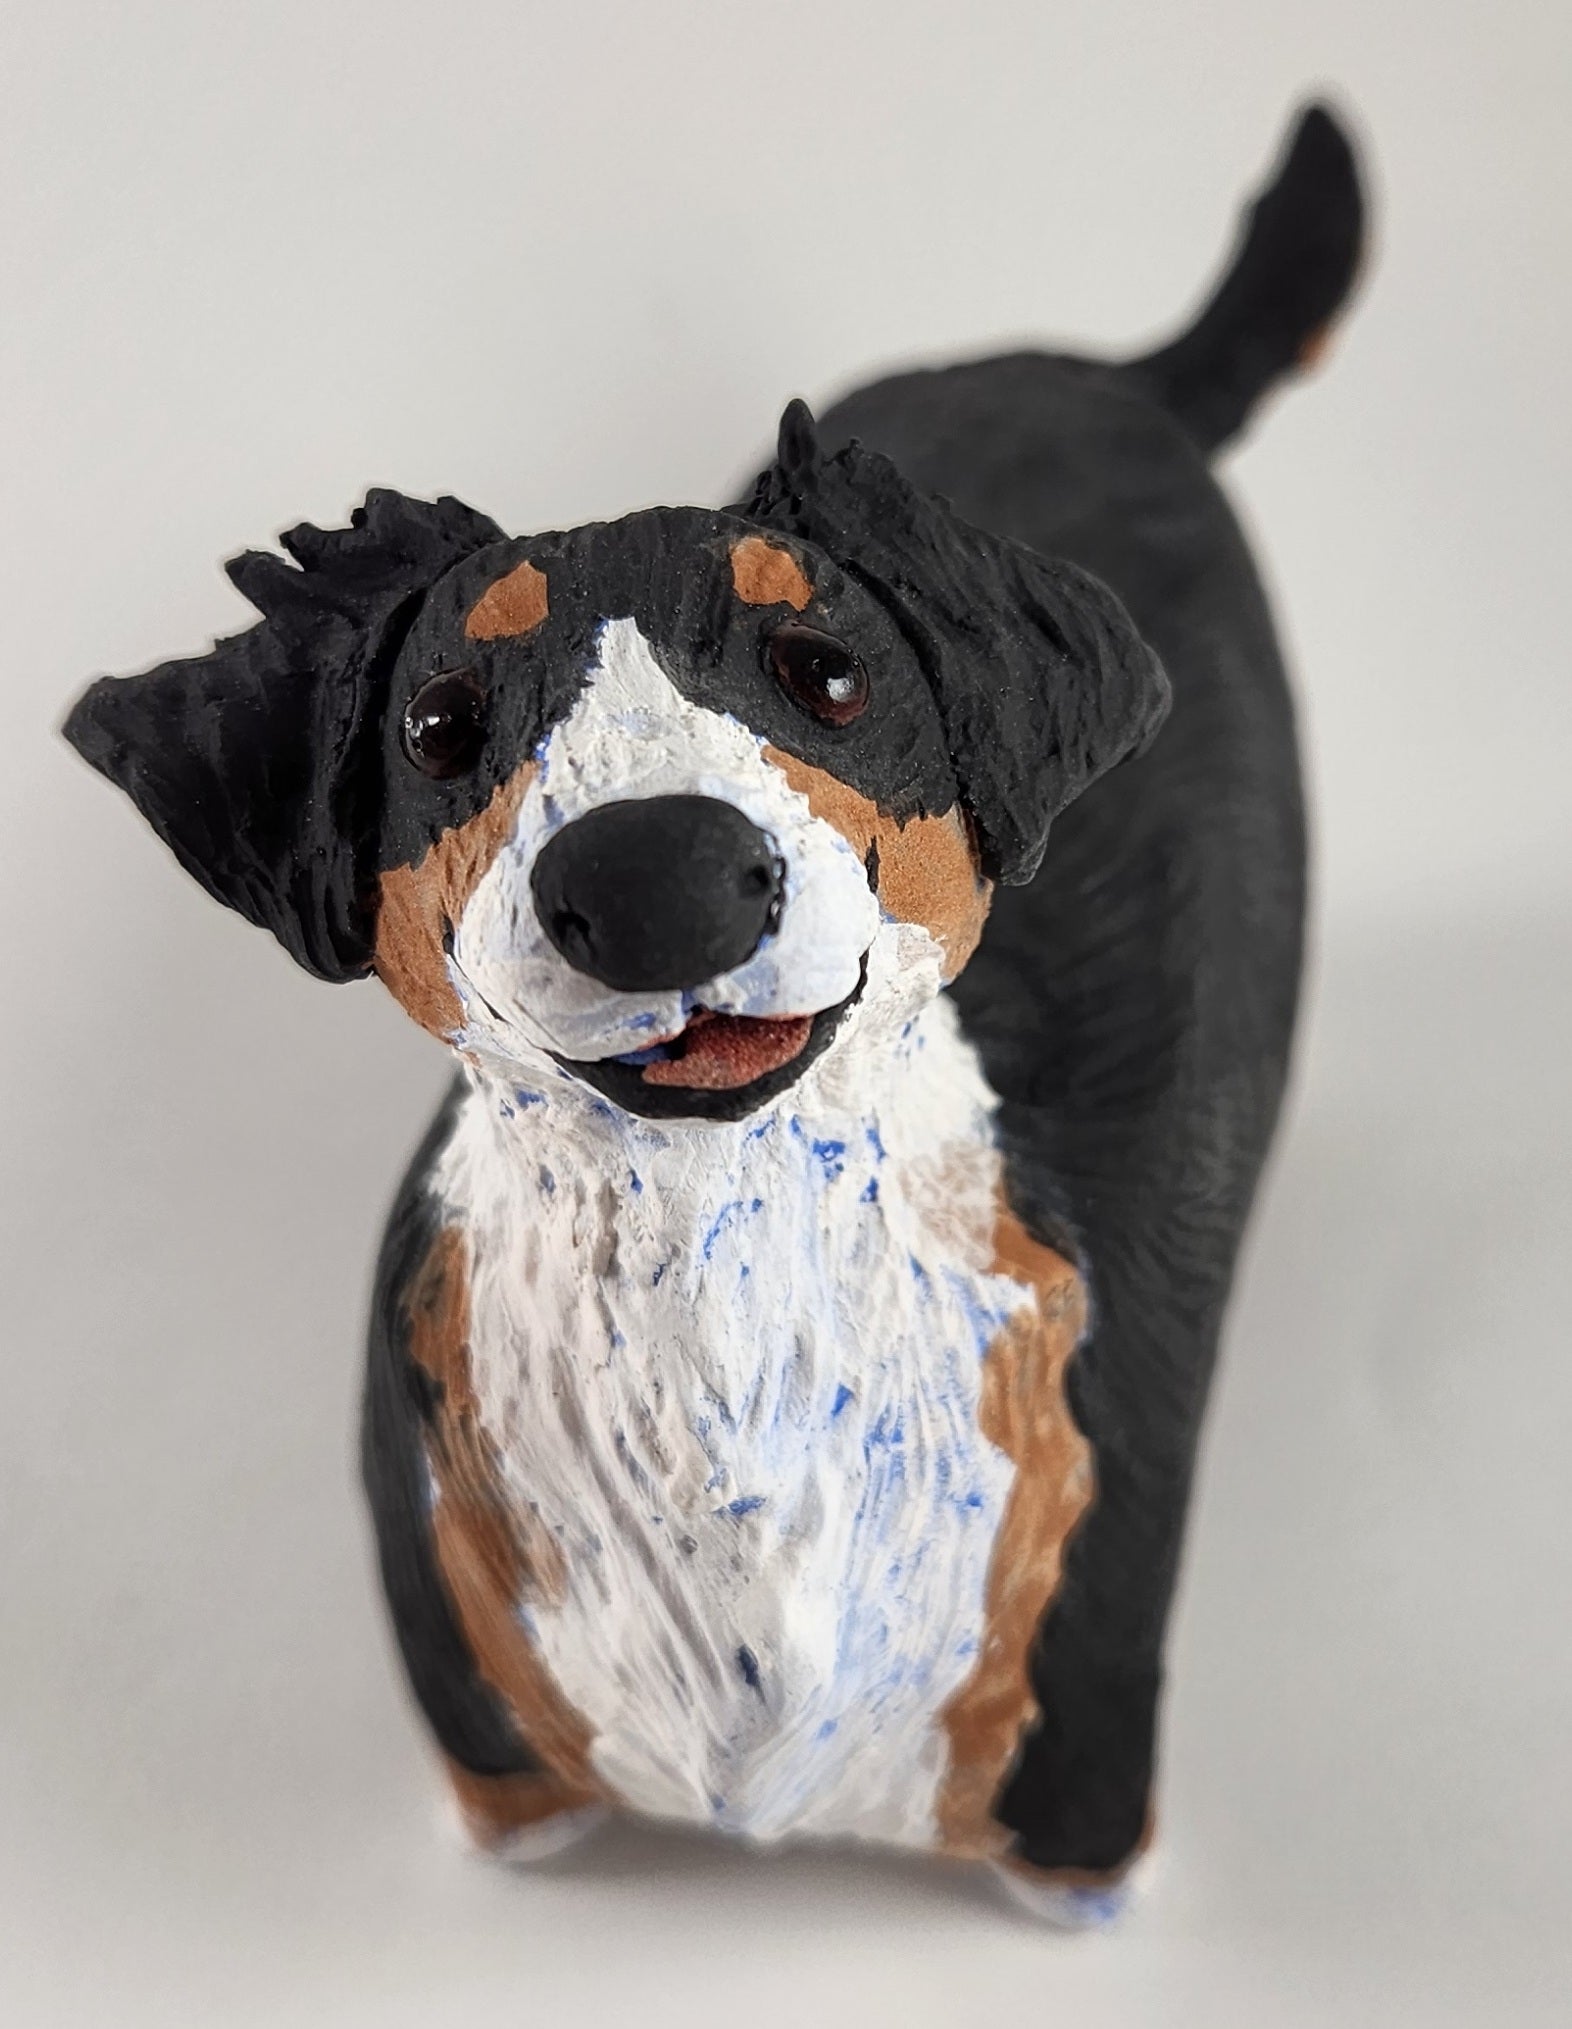 Trixie the Tricolor Dog - Artworks by Karen Fincannon